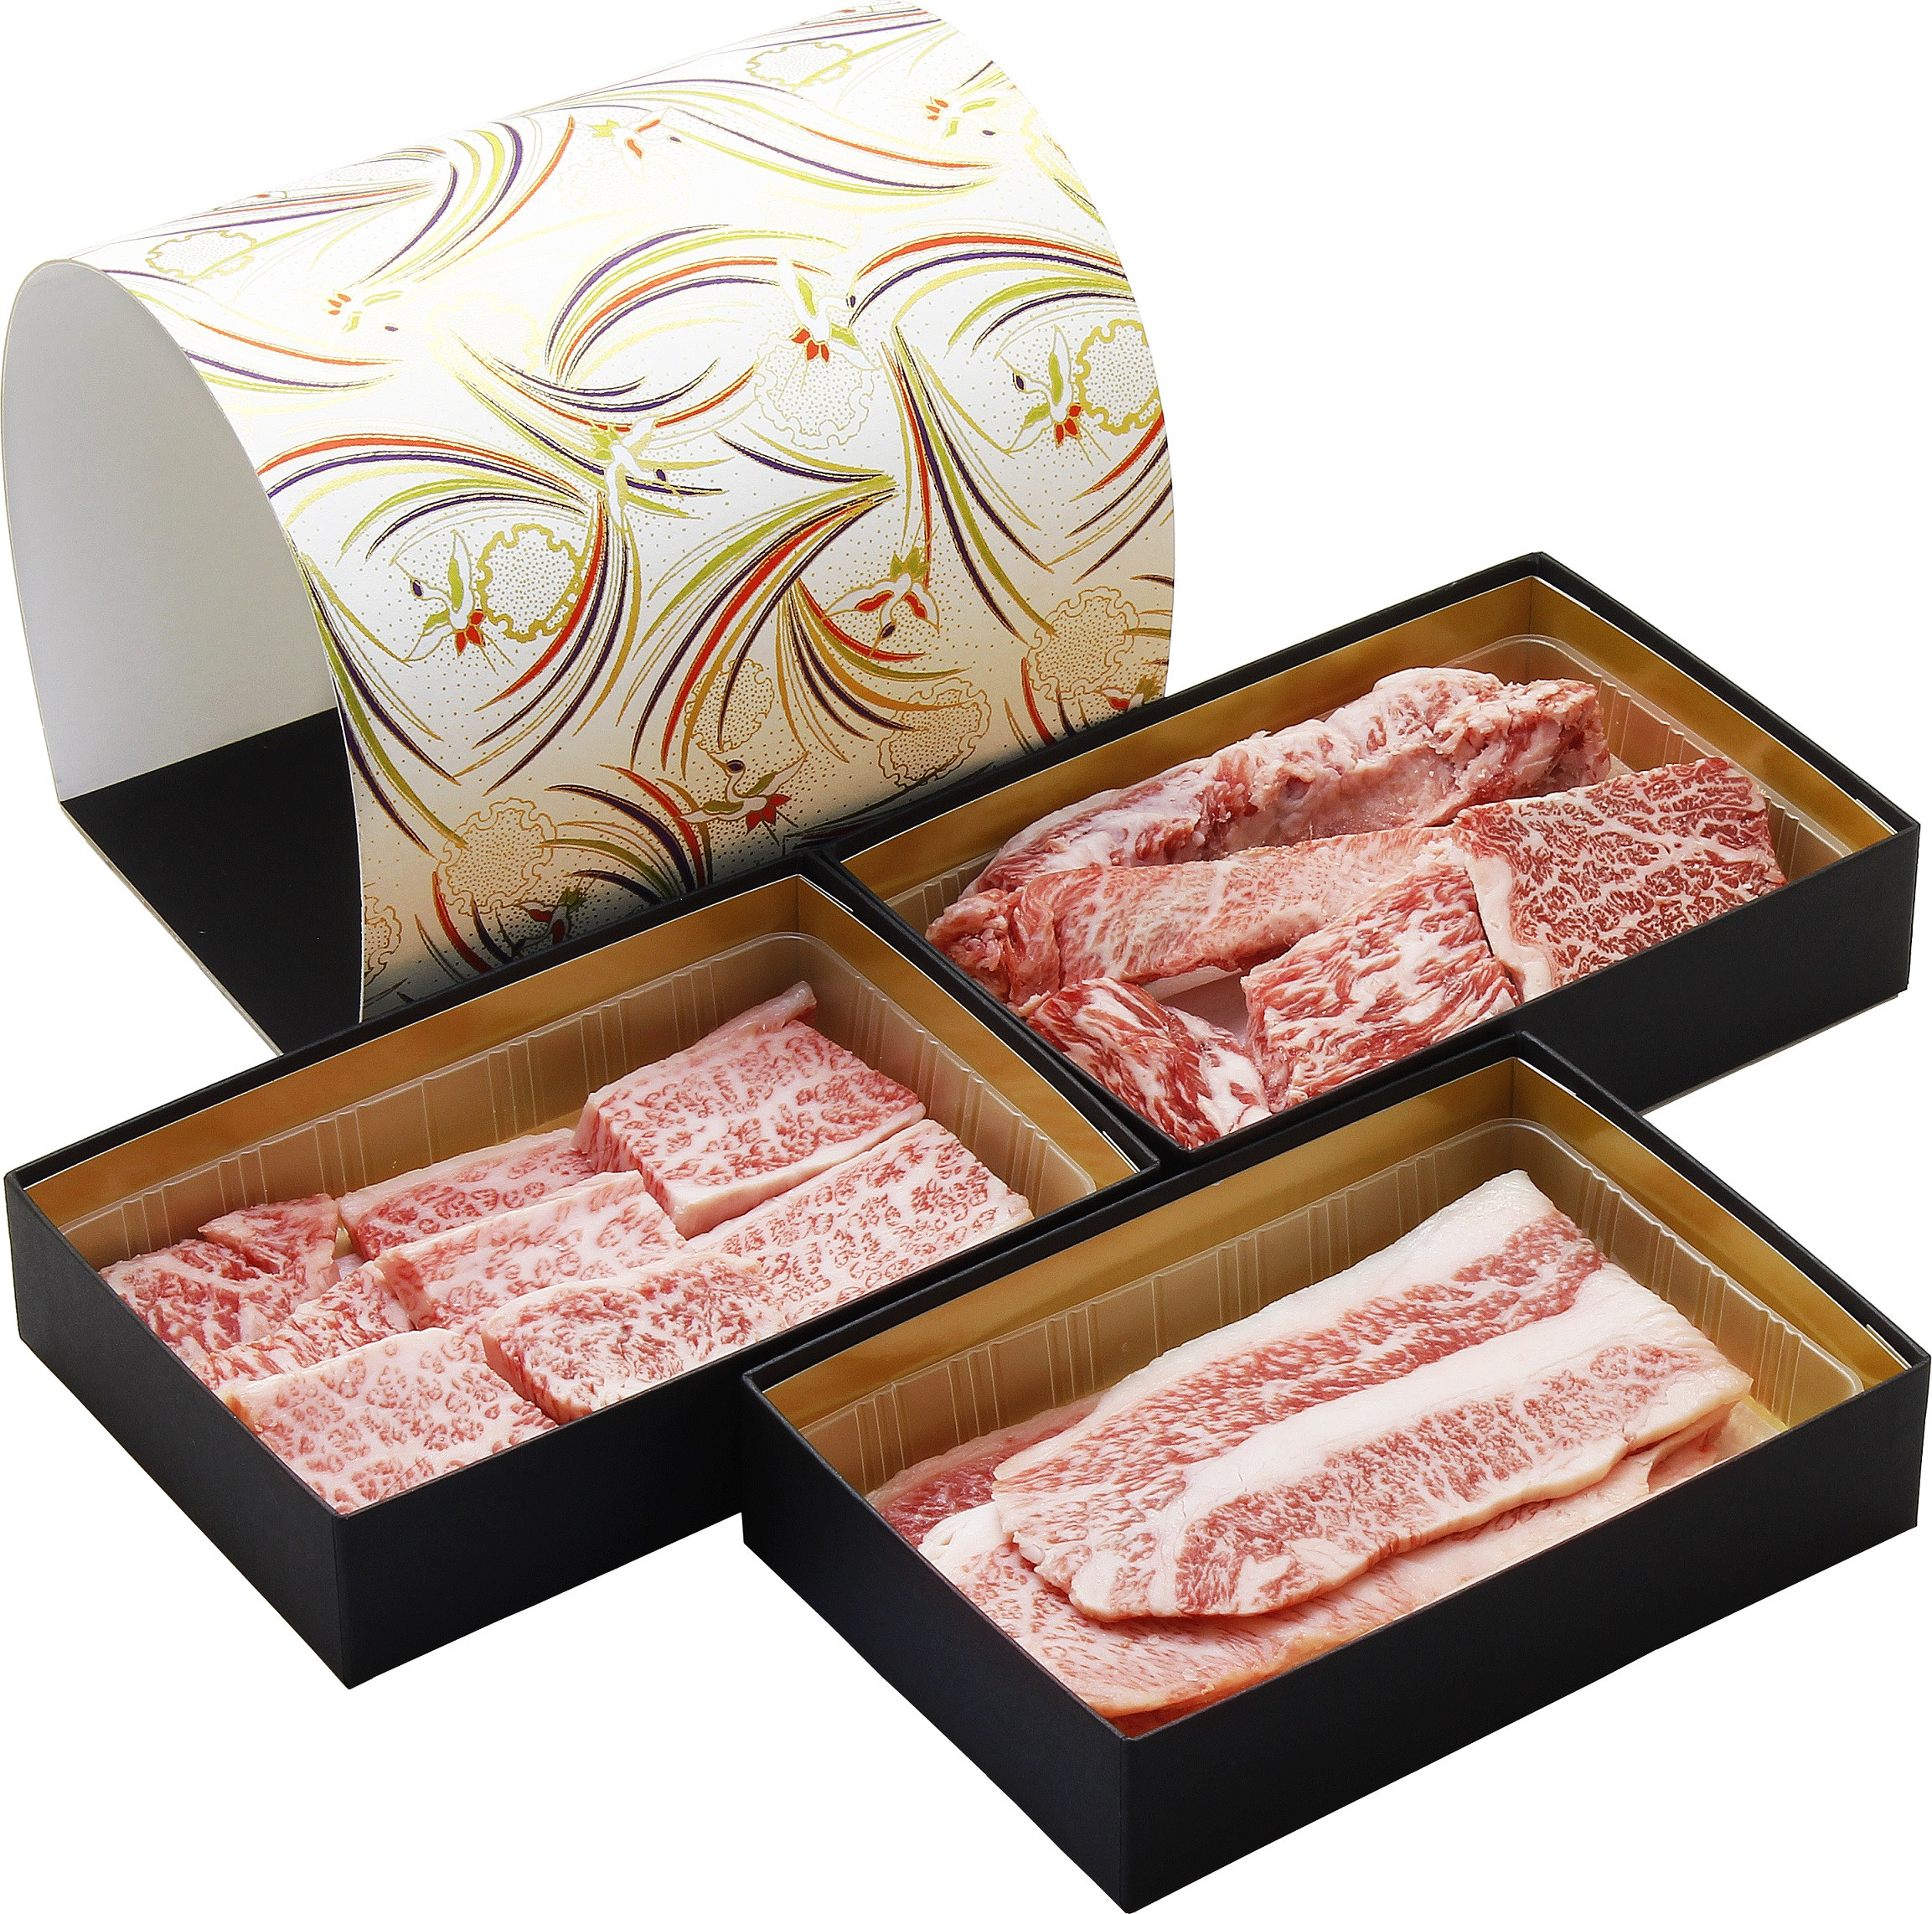 
鳥取和牛食べ比べ焼肉セット（BOX入り）
